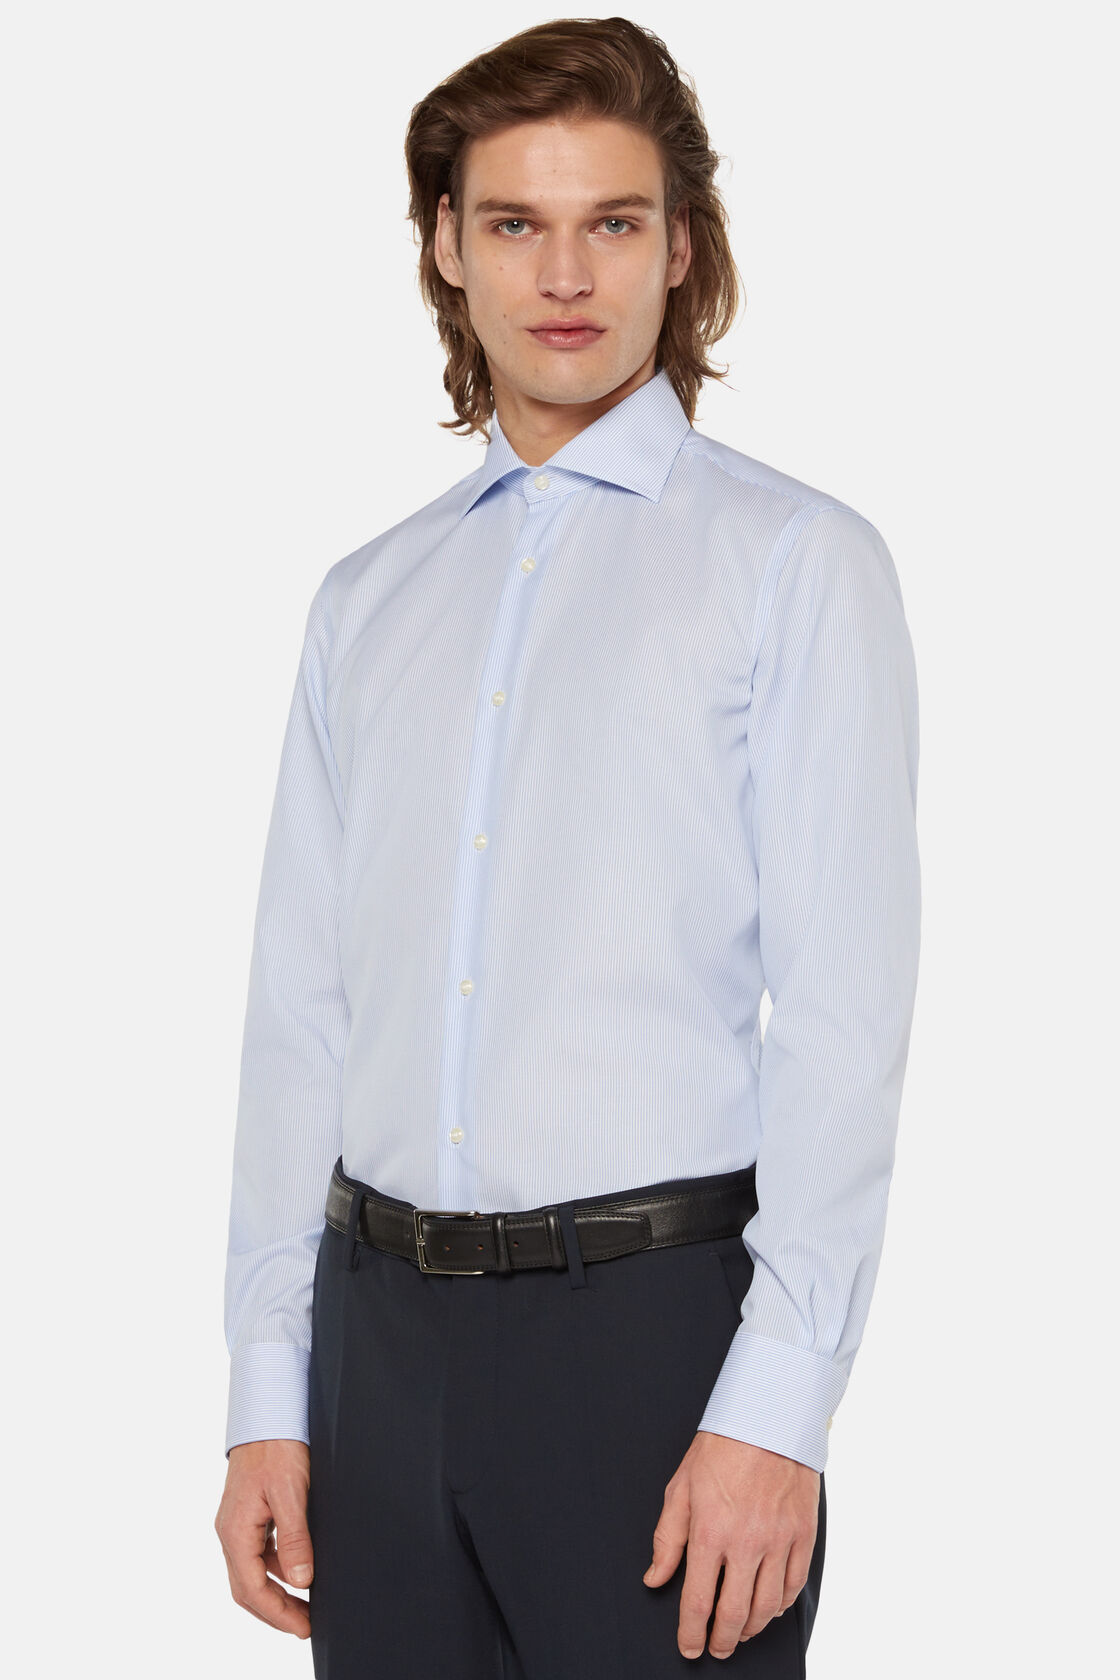 Camisa de algodão azul celeste de ajuste slim, Light Blue, hi-res